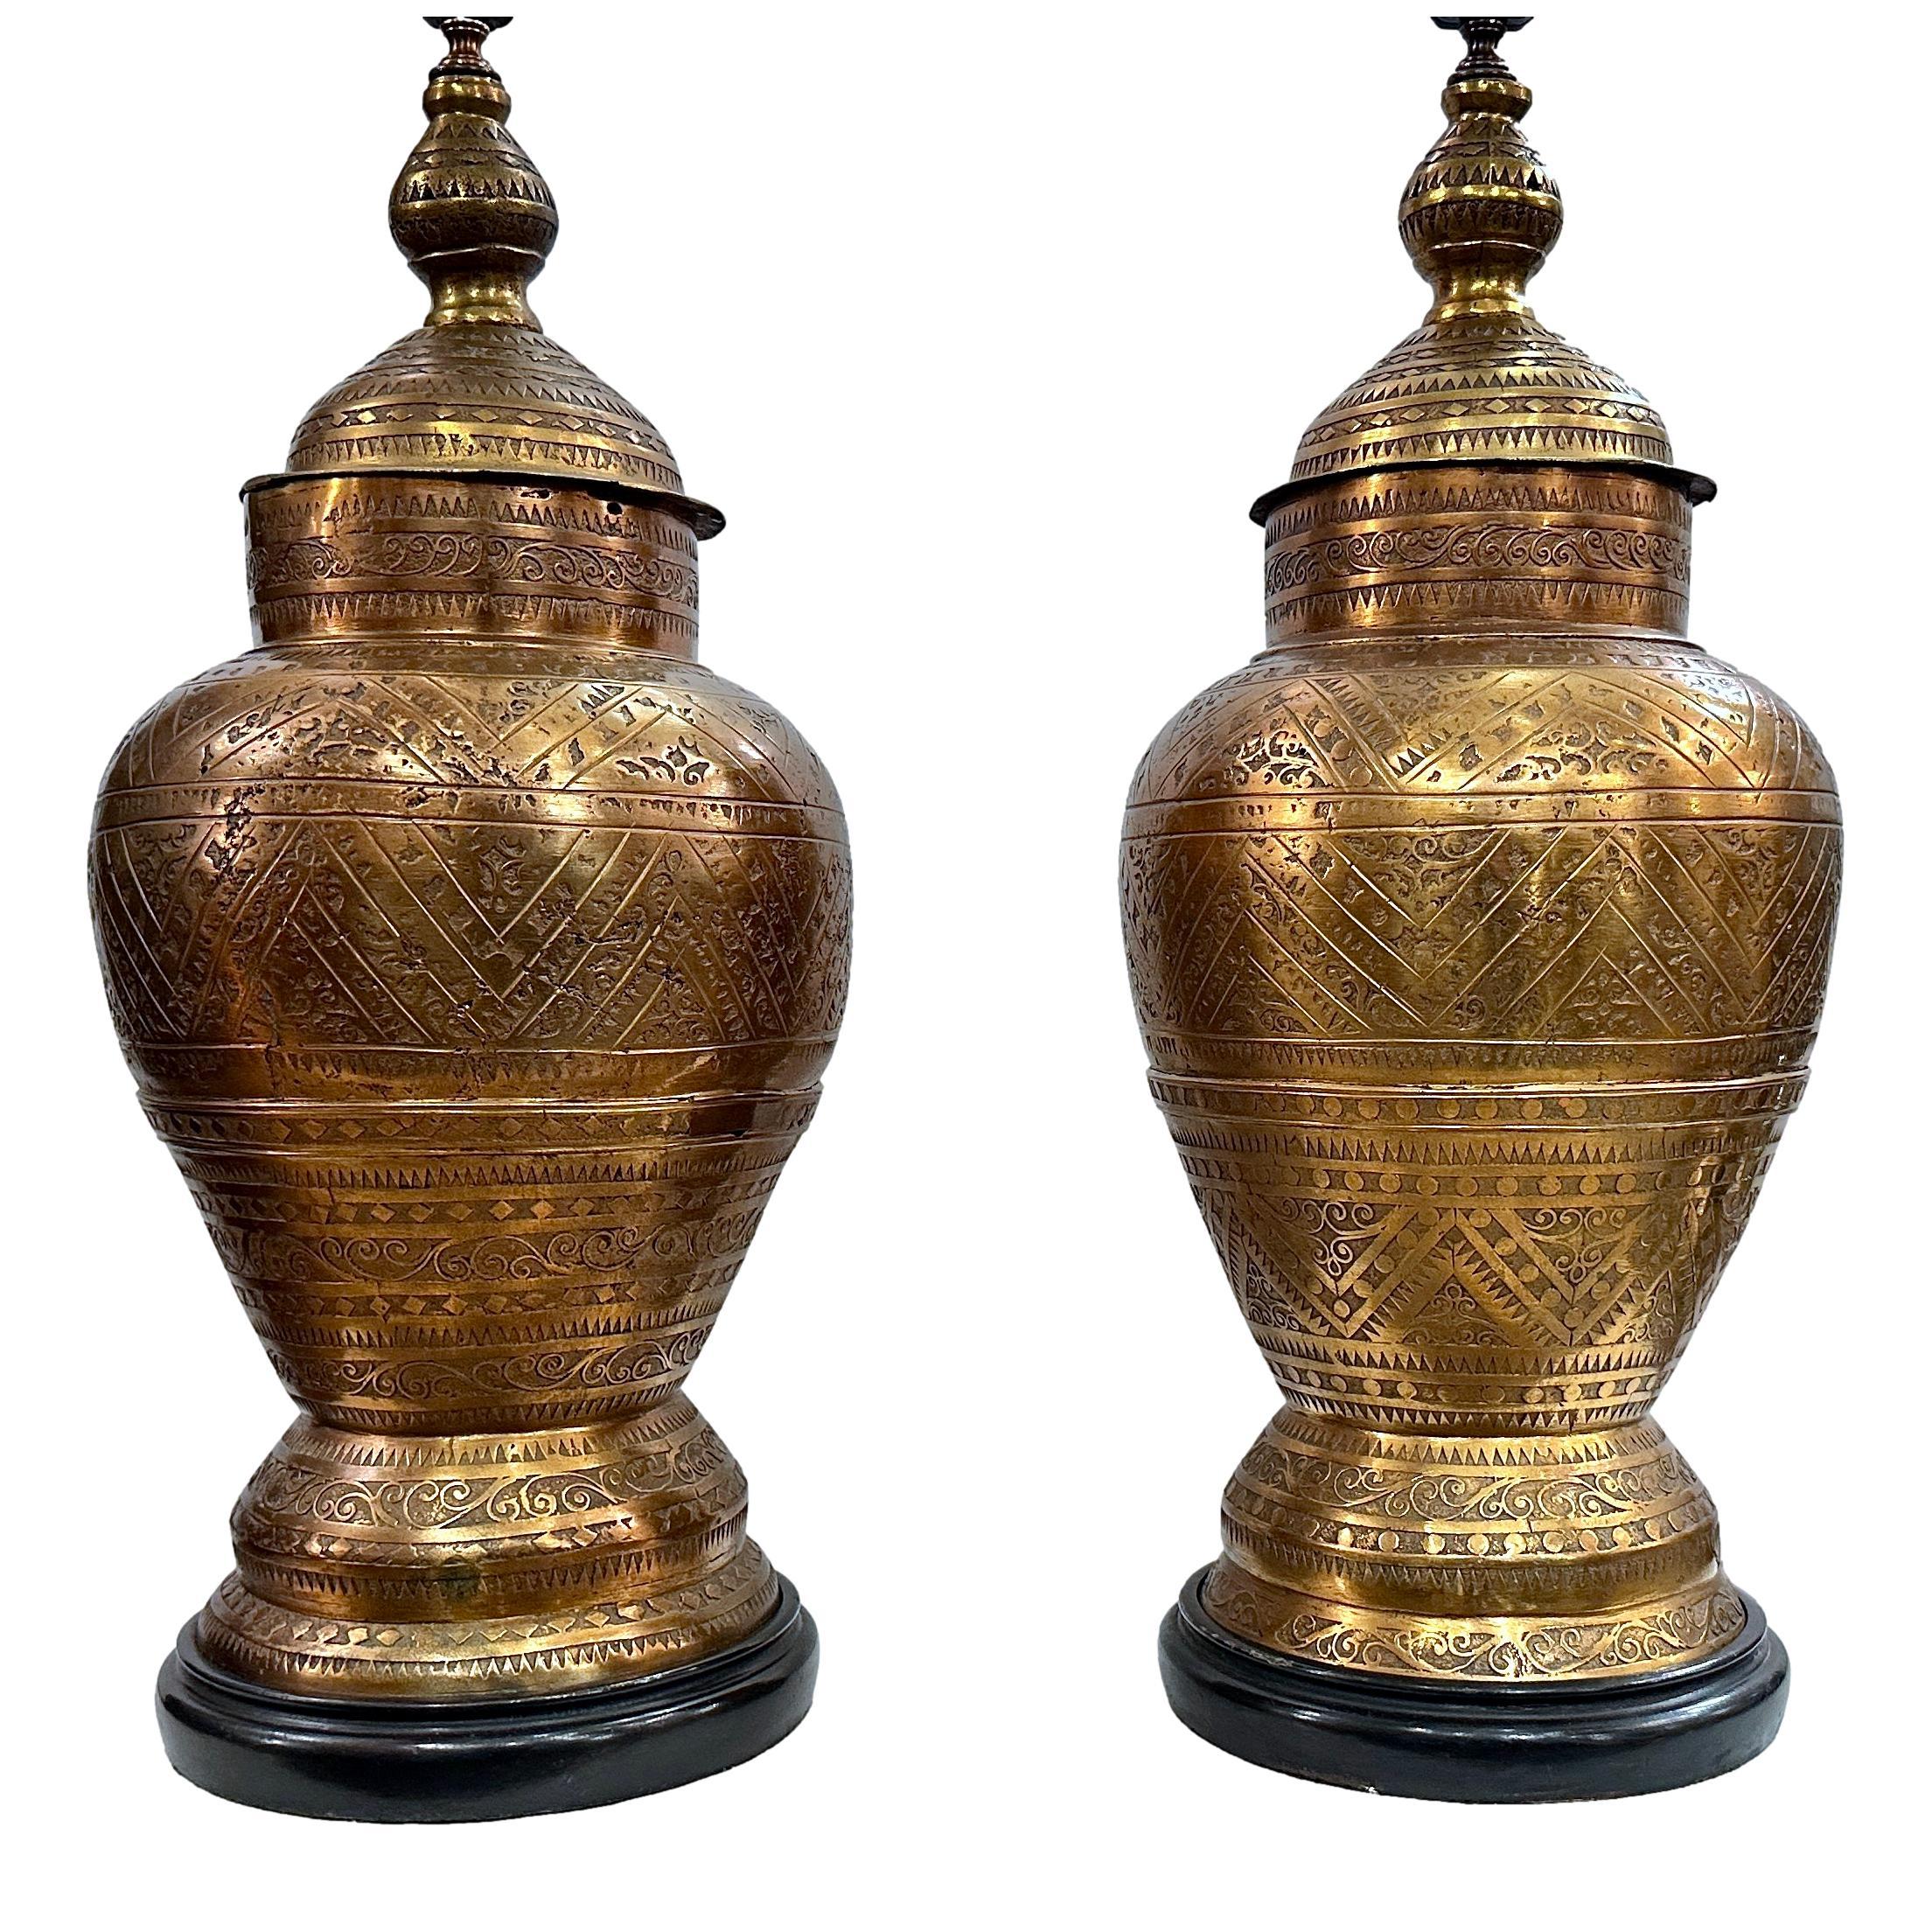 Paar marokkanische Lampen aus geätzter und gegossener Bronze mit originaler Patina, circa 1960er Jahre. 

Abmessungen:
Höhe des Körpers: 27